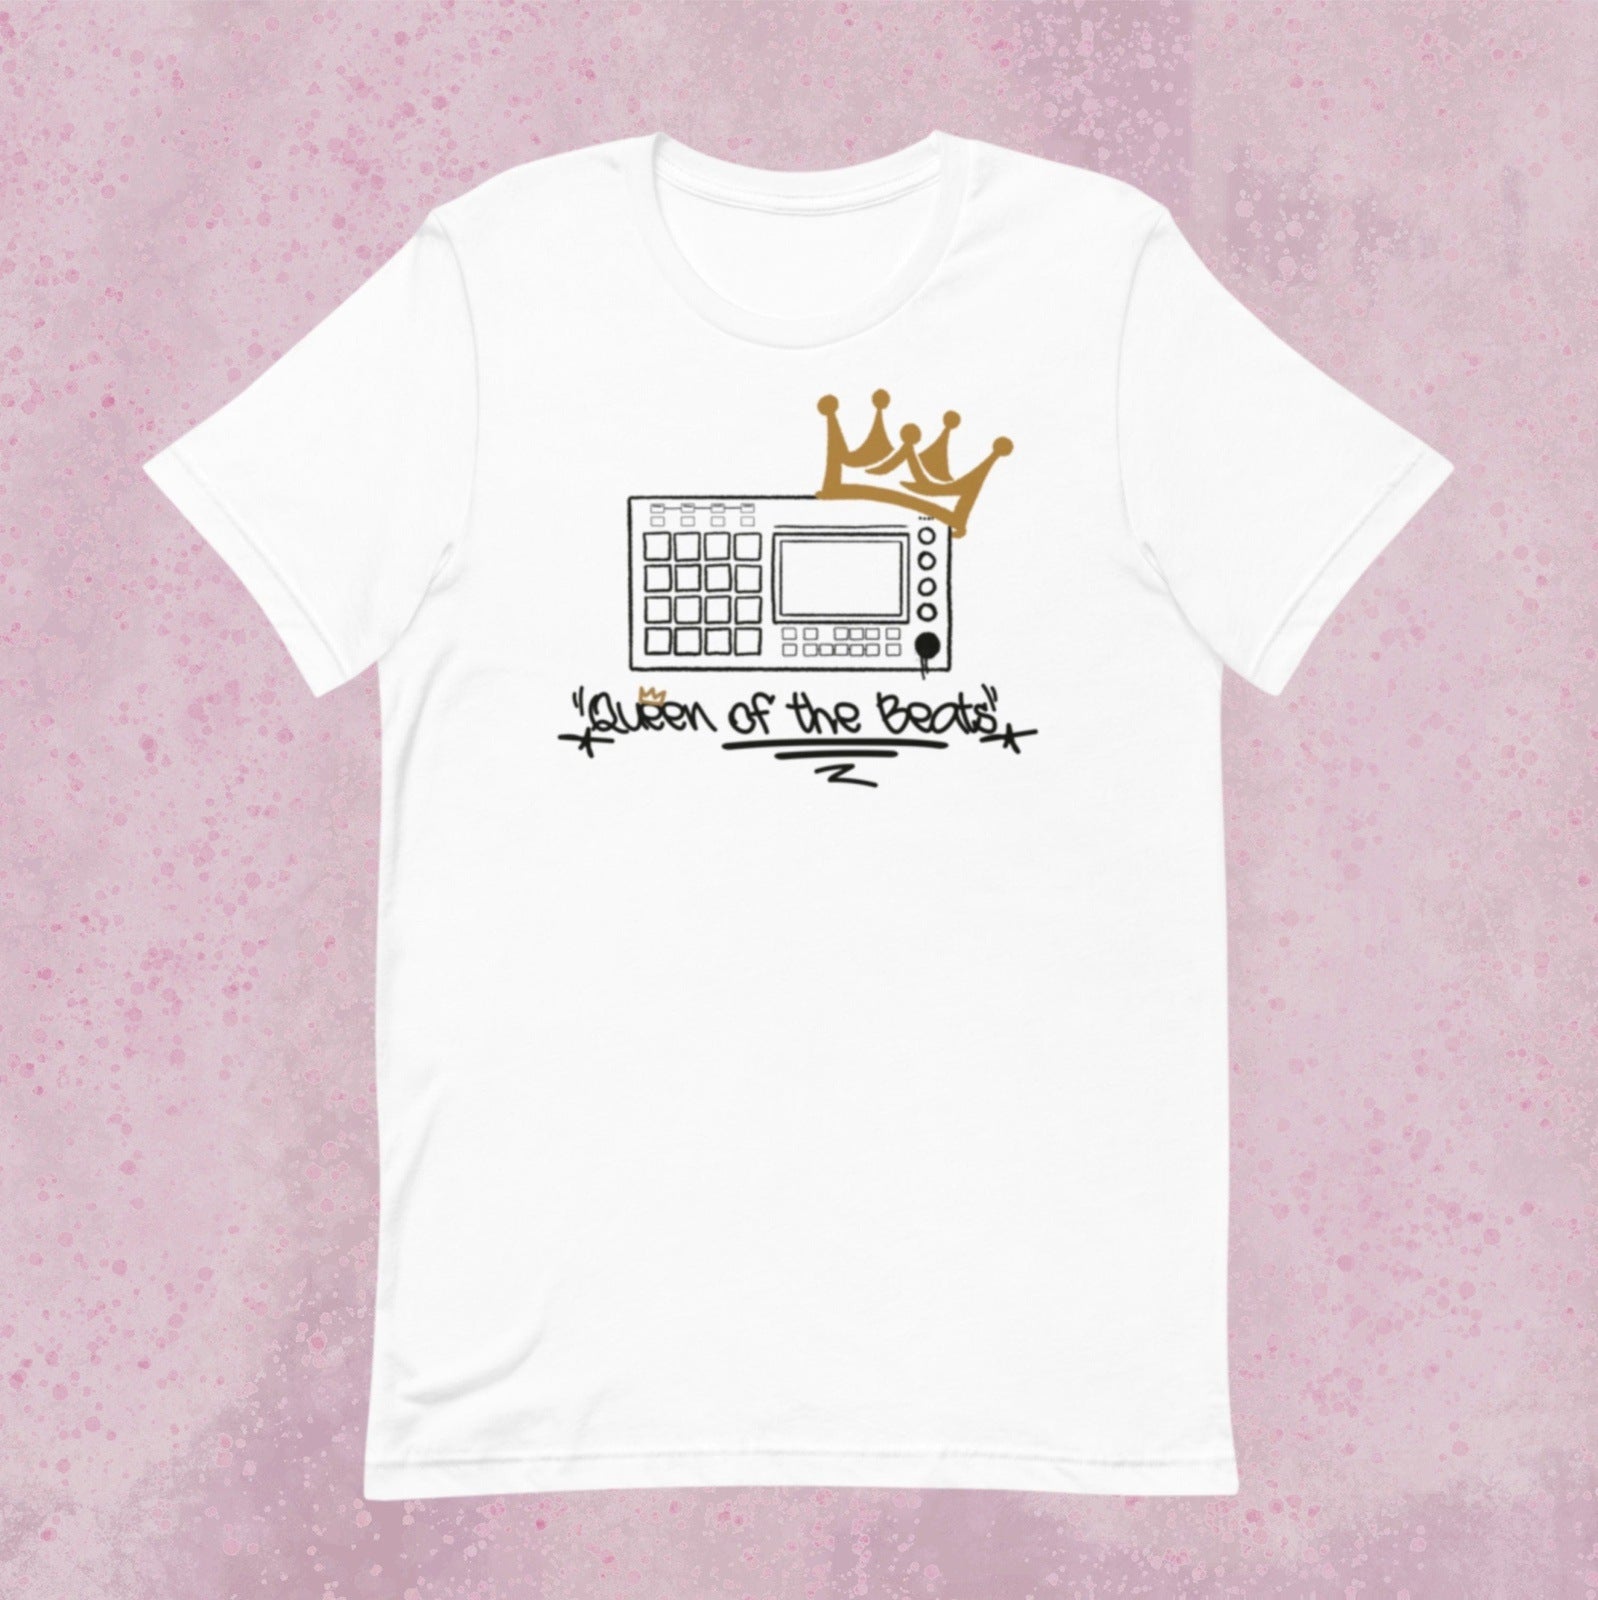 Womens "Queen of the beats" T-Shirt